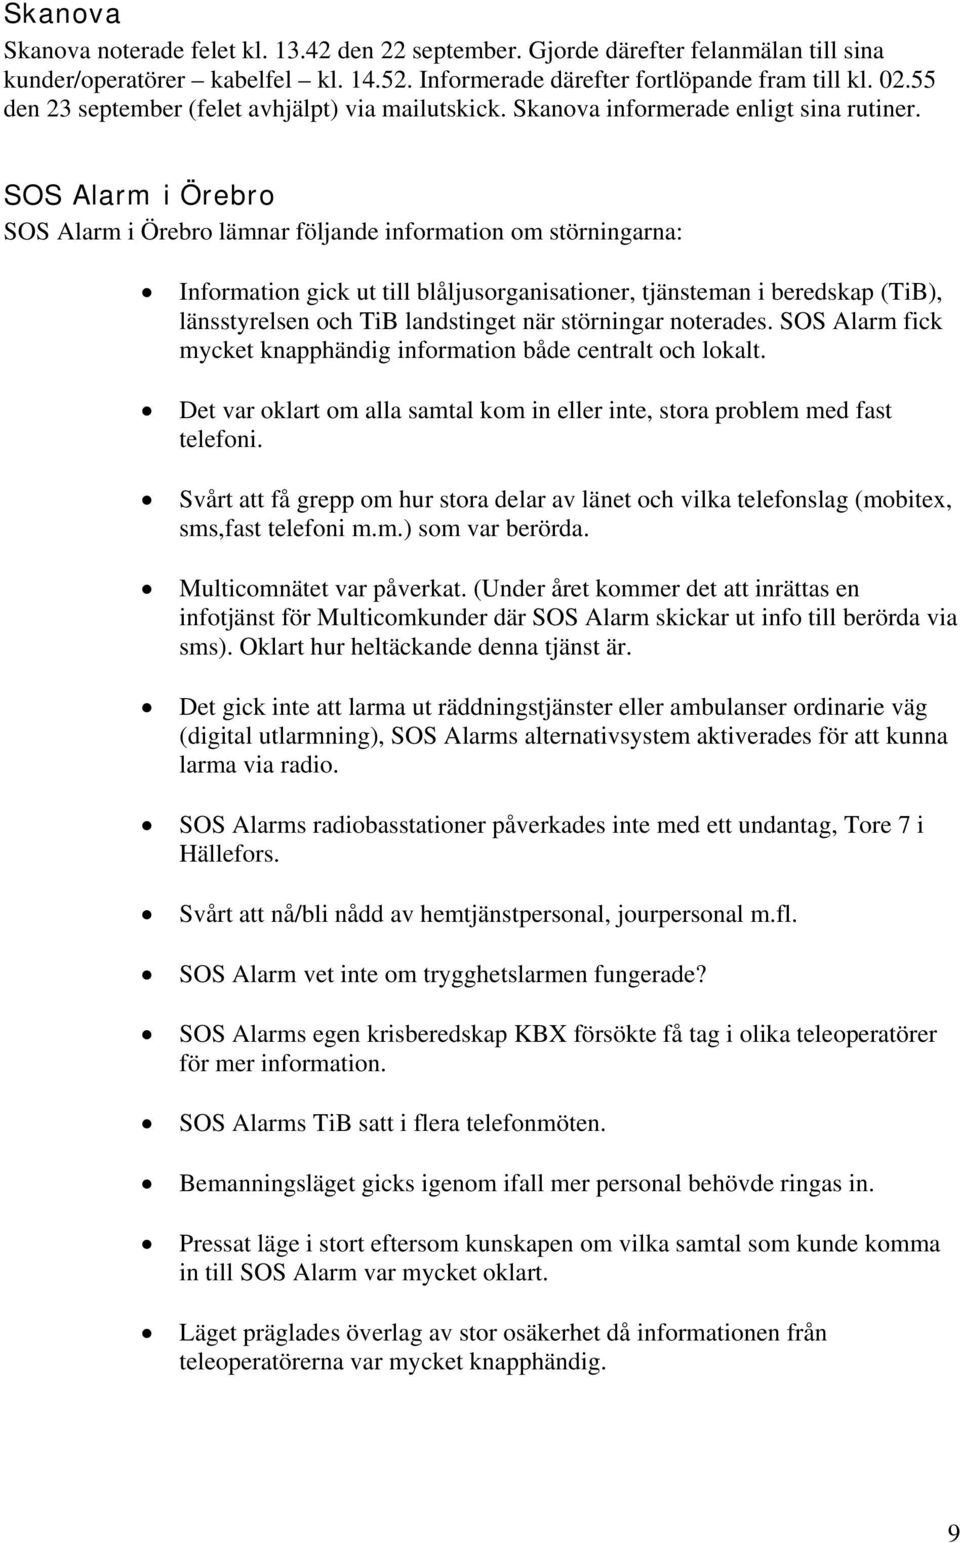 SOS Alarm i Örebro SOS Alarm i Örebro lämnar följande information om störningarna: Information gick ut till blåljusorganisationer, tjänsteman i beredskap (TiB), länsstyrelsen och TiB landstinget när